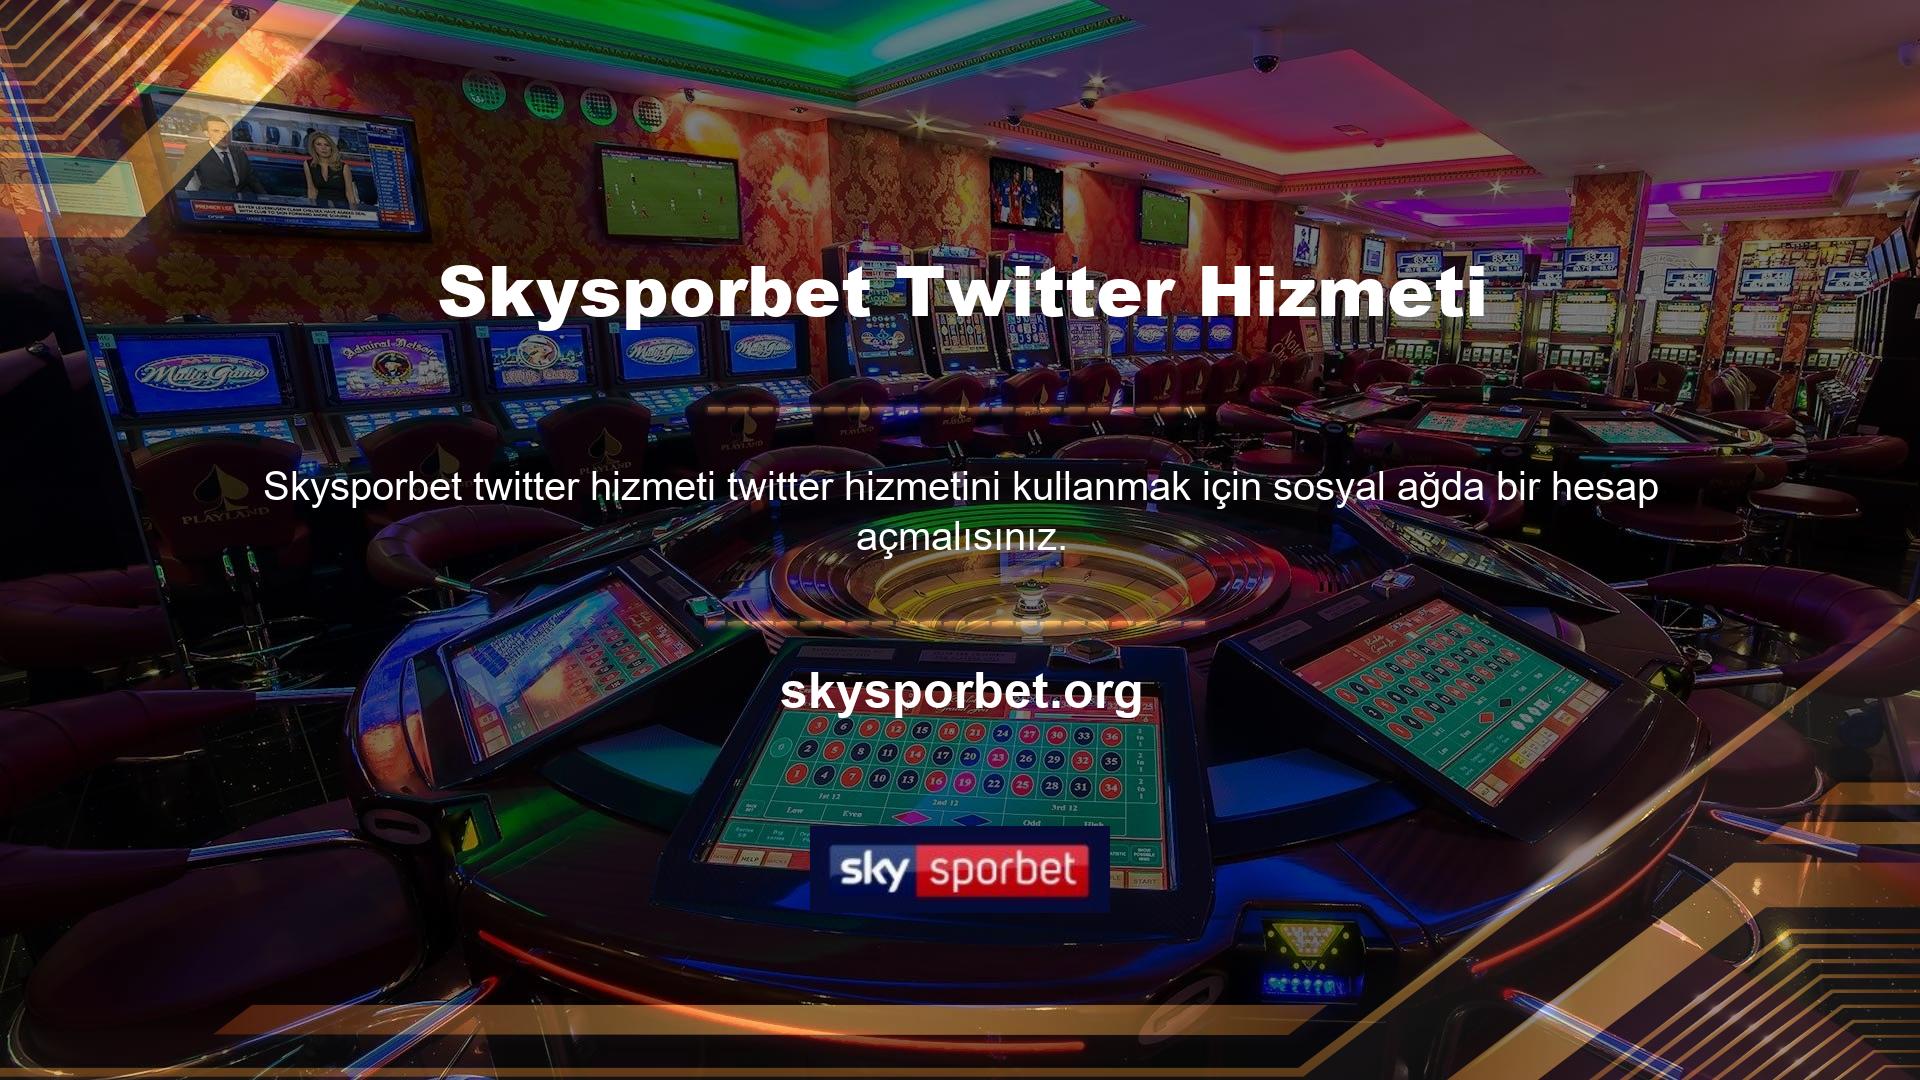 Skysporbet Twitter servisinde bahis oranları, çeşitli sporlar ve canlı bahisler sosyal medya hesaplarımız üzerinden yayınlanmaktadır